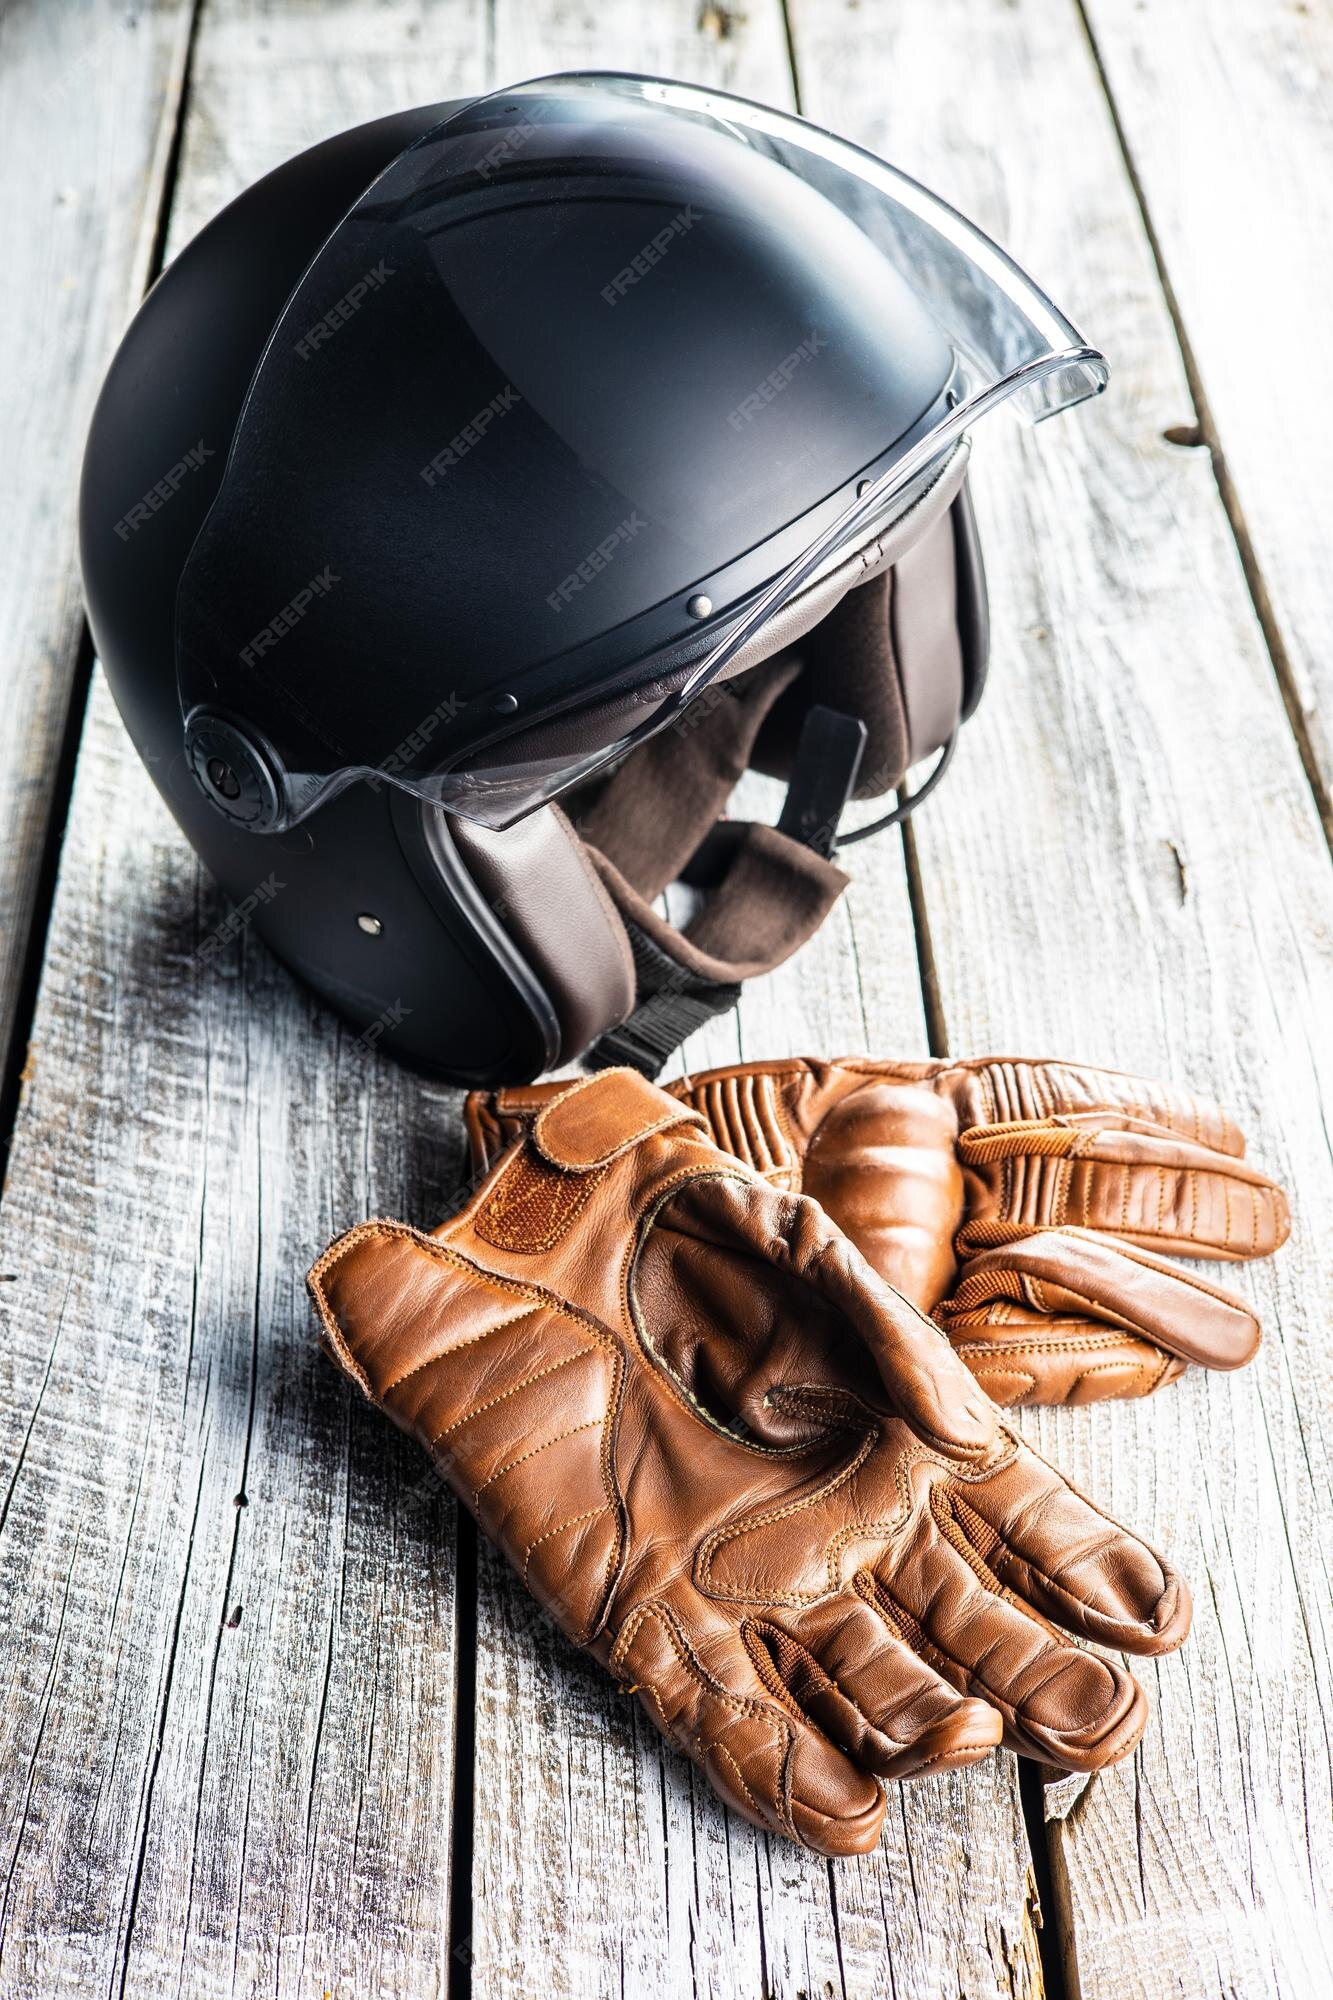 Accesorios de seguridad para moto guantes y casco de piel | Premium